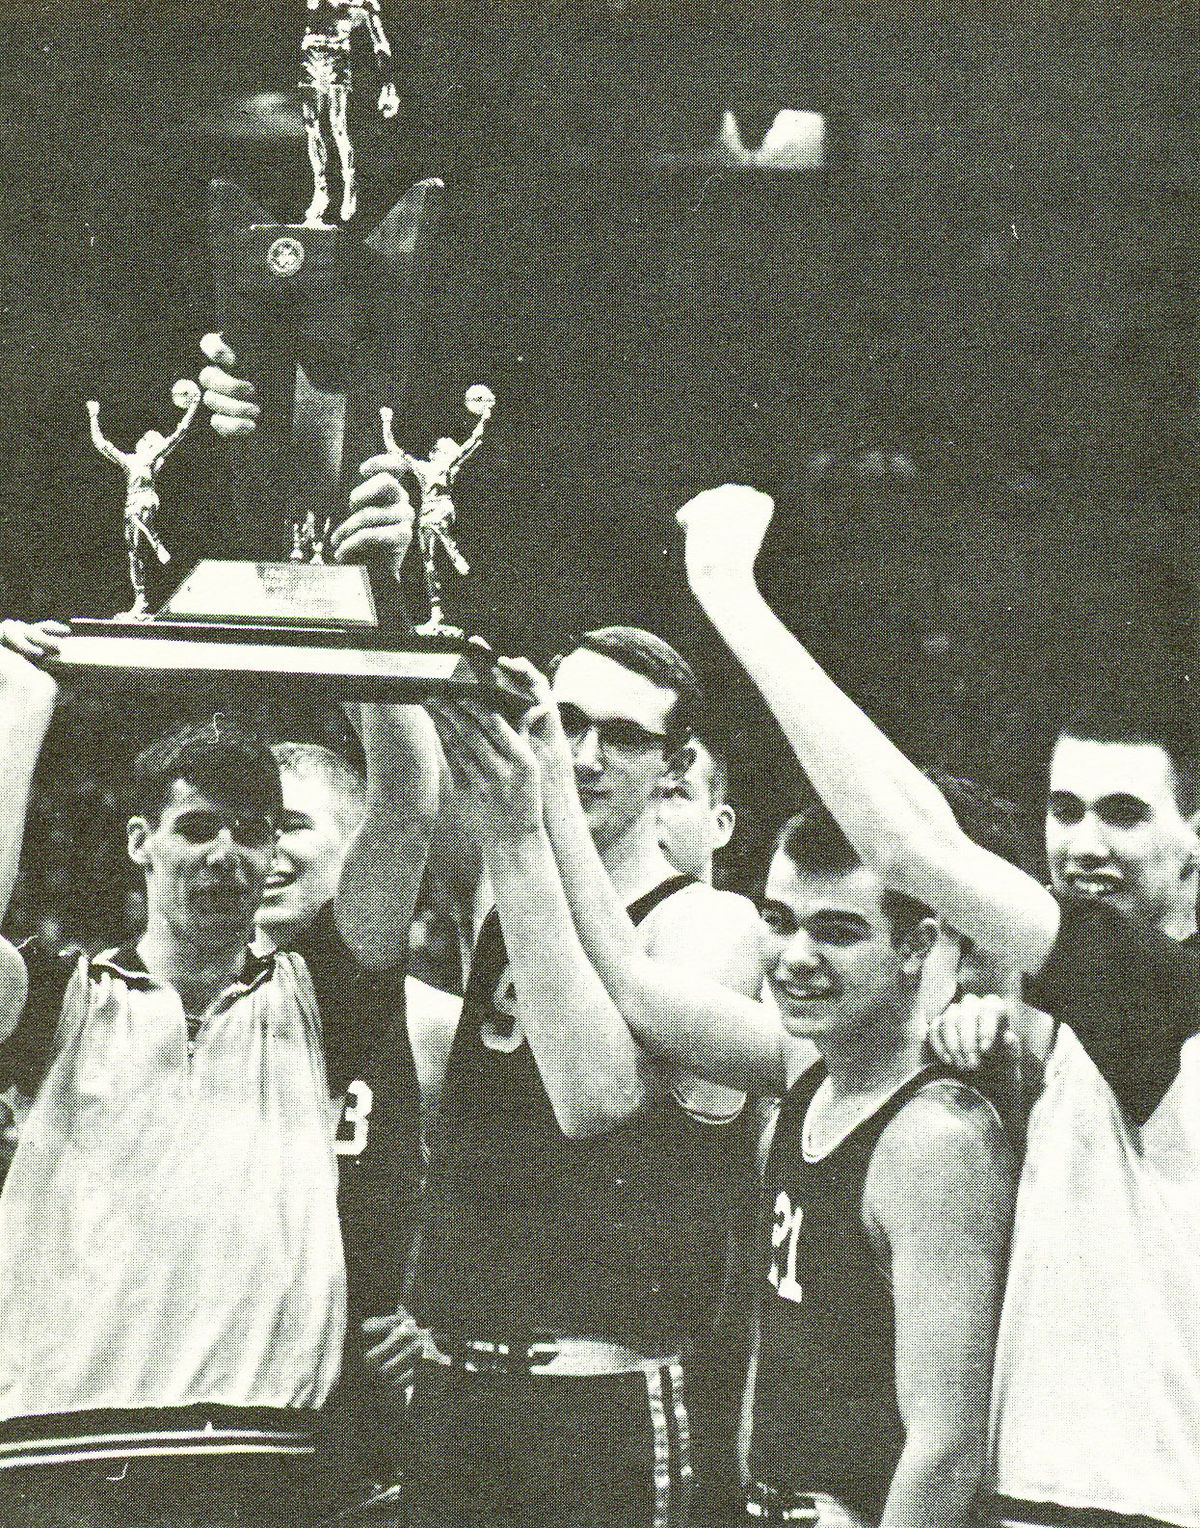 1965 주 챔피언십 남자 농구 대표팀